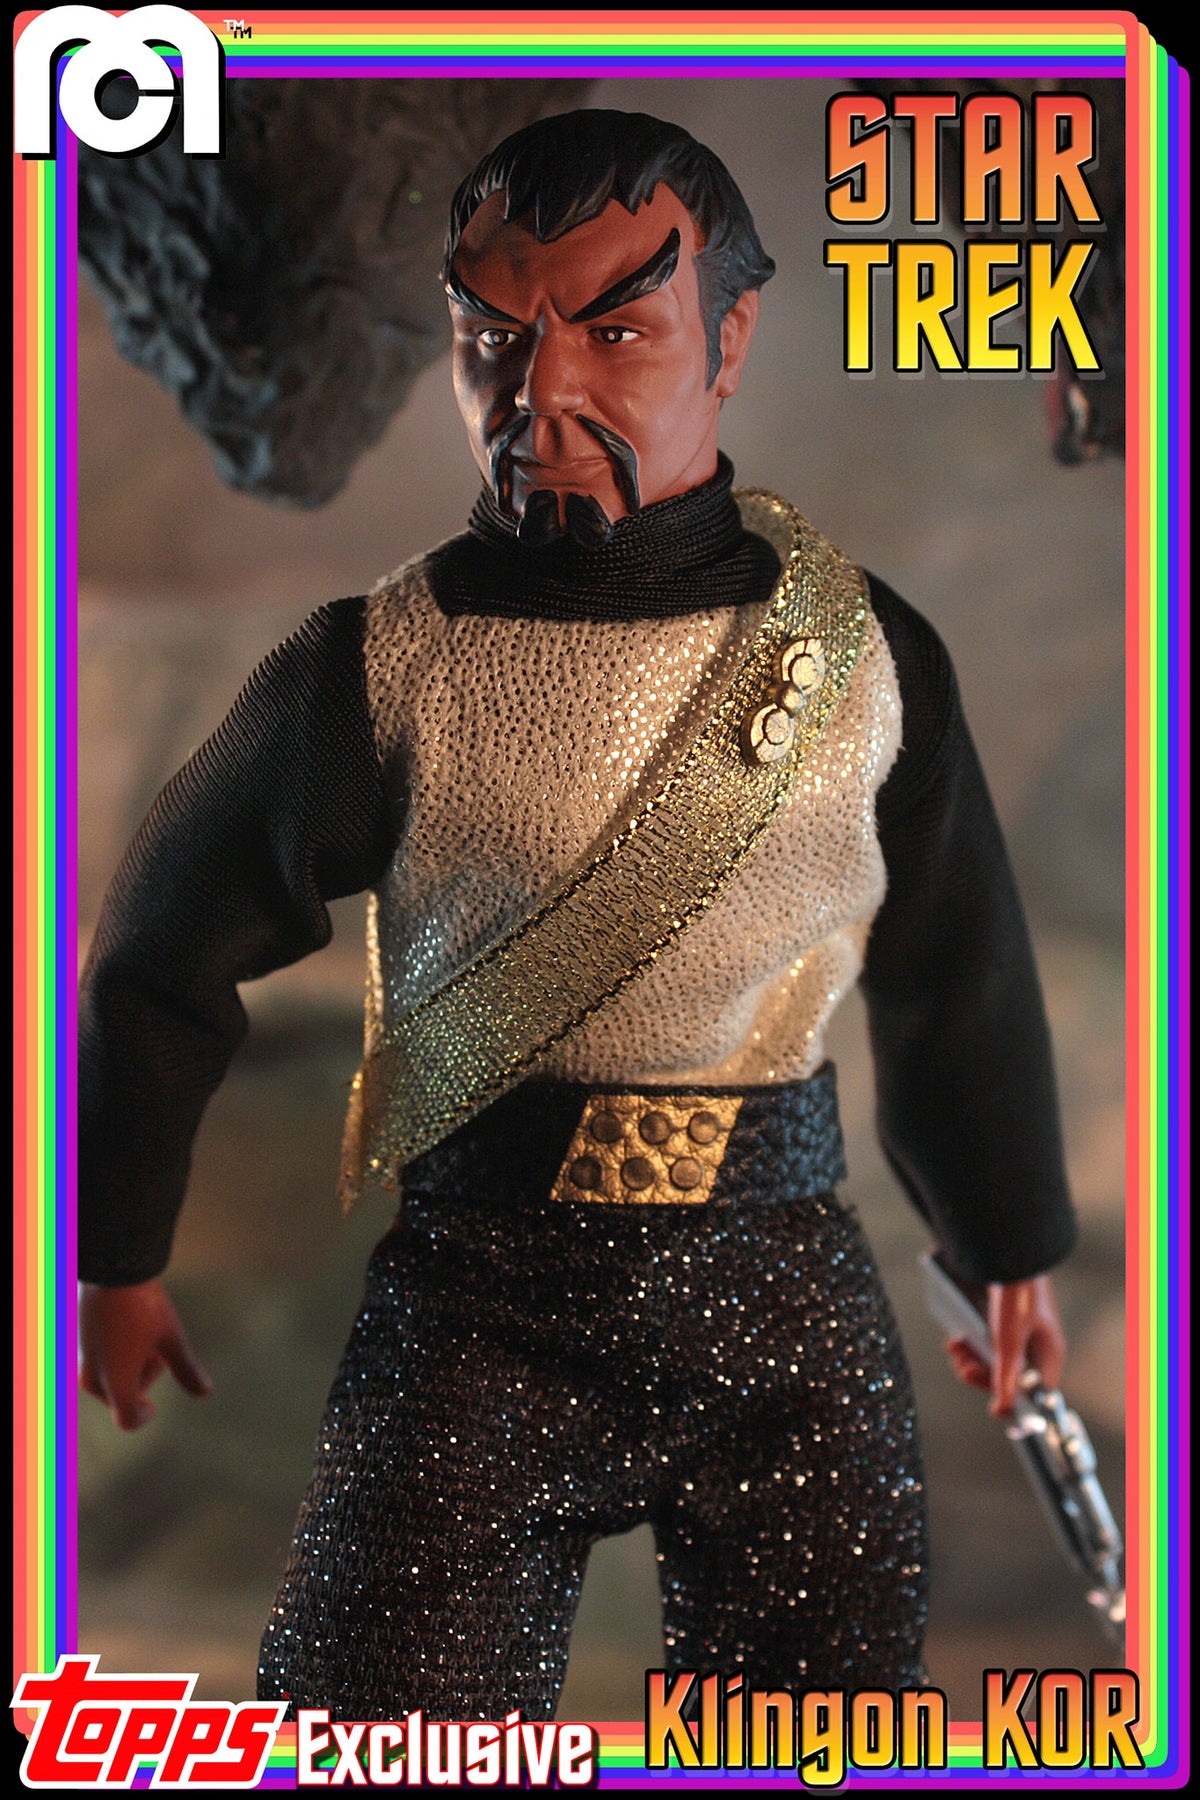 Mego Topps X - Star Trek - Kor the Klingon 8" Action Figure